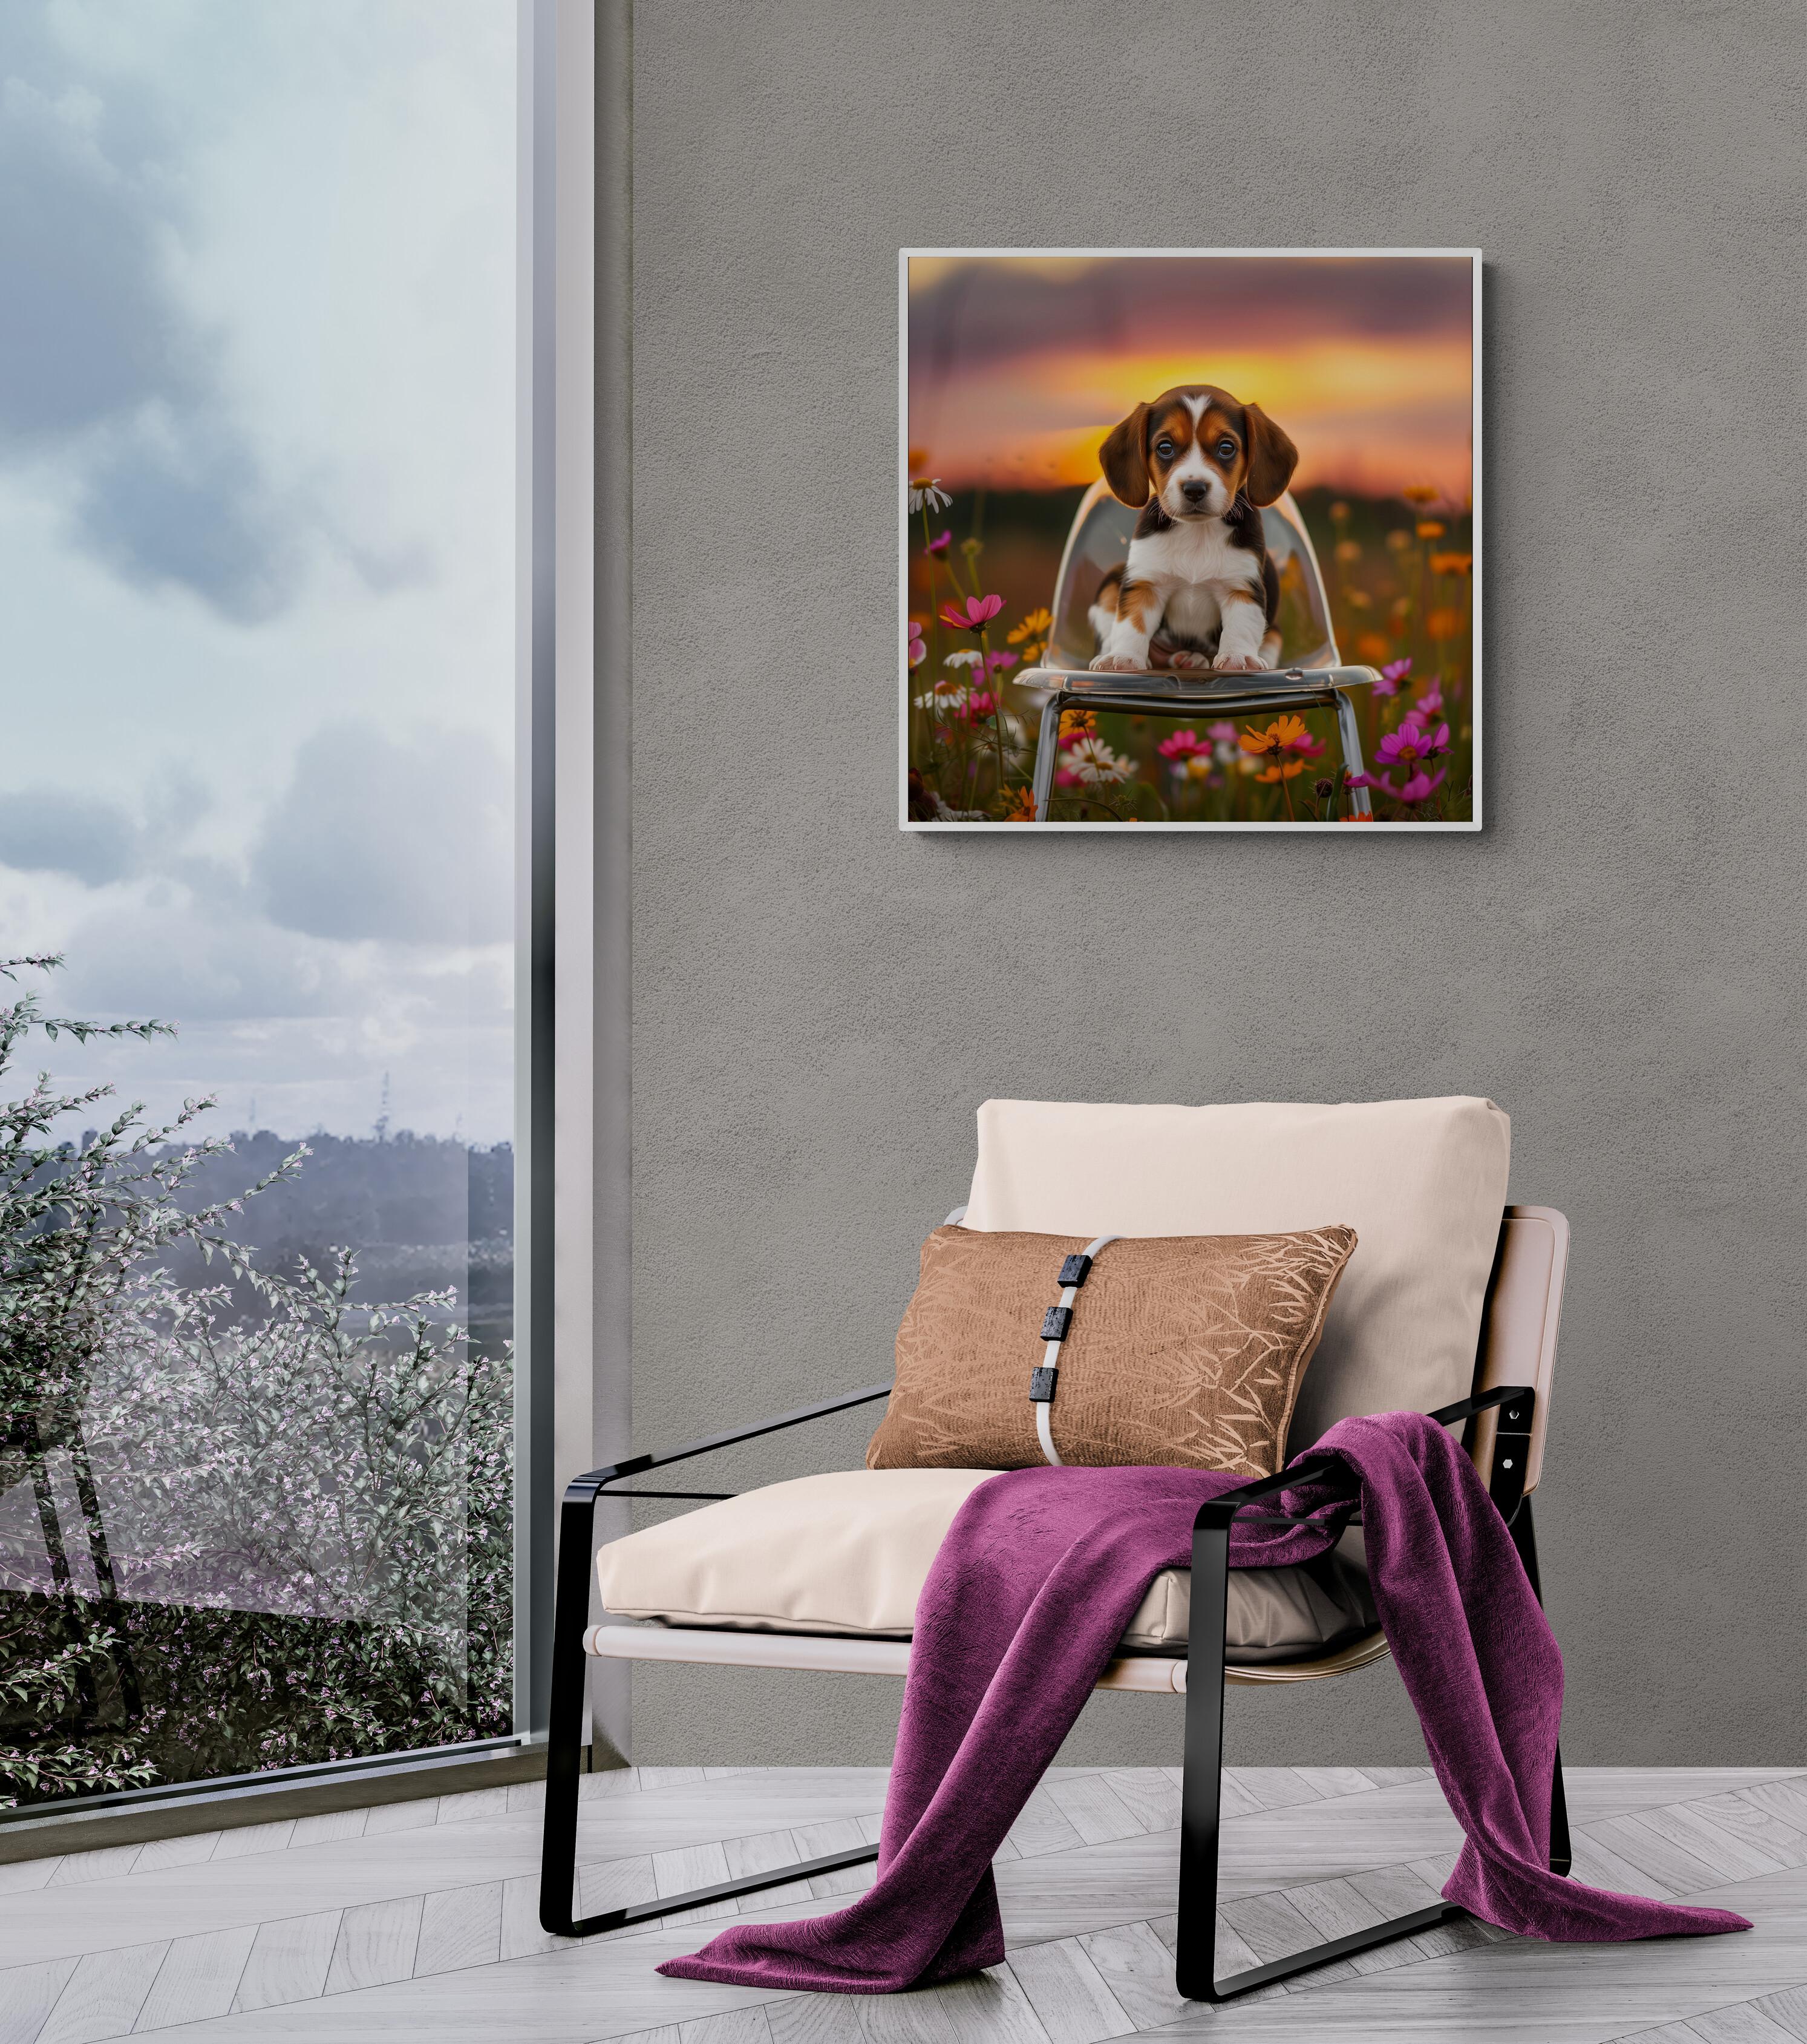 Sir Barksalot - Beagle (Welpe, Hund, Porträt, Inszeniert, Lustig, 40% AUS LISTENPREIS) – Photograph von Lord Fauntleroy